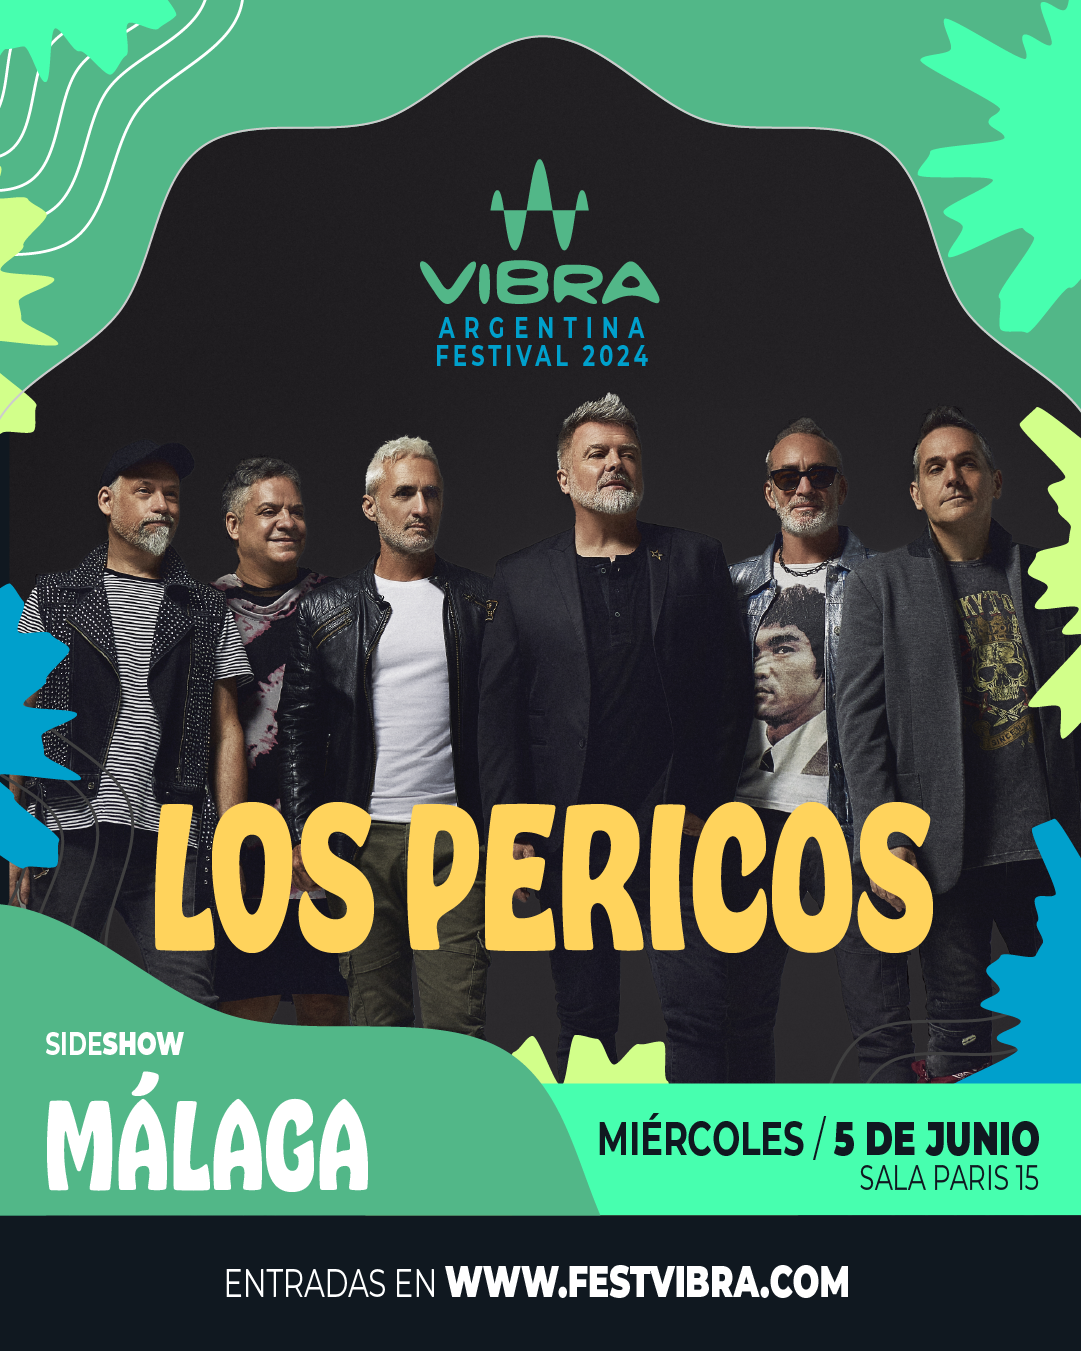 VIBRA ARGENTINA FESTIVAL 2024 en MALAGA, sala paris 15, Miercoles 5 Junio Los Pericos. Entradas y Info: www.festvibra.com